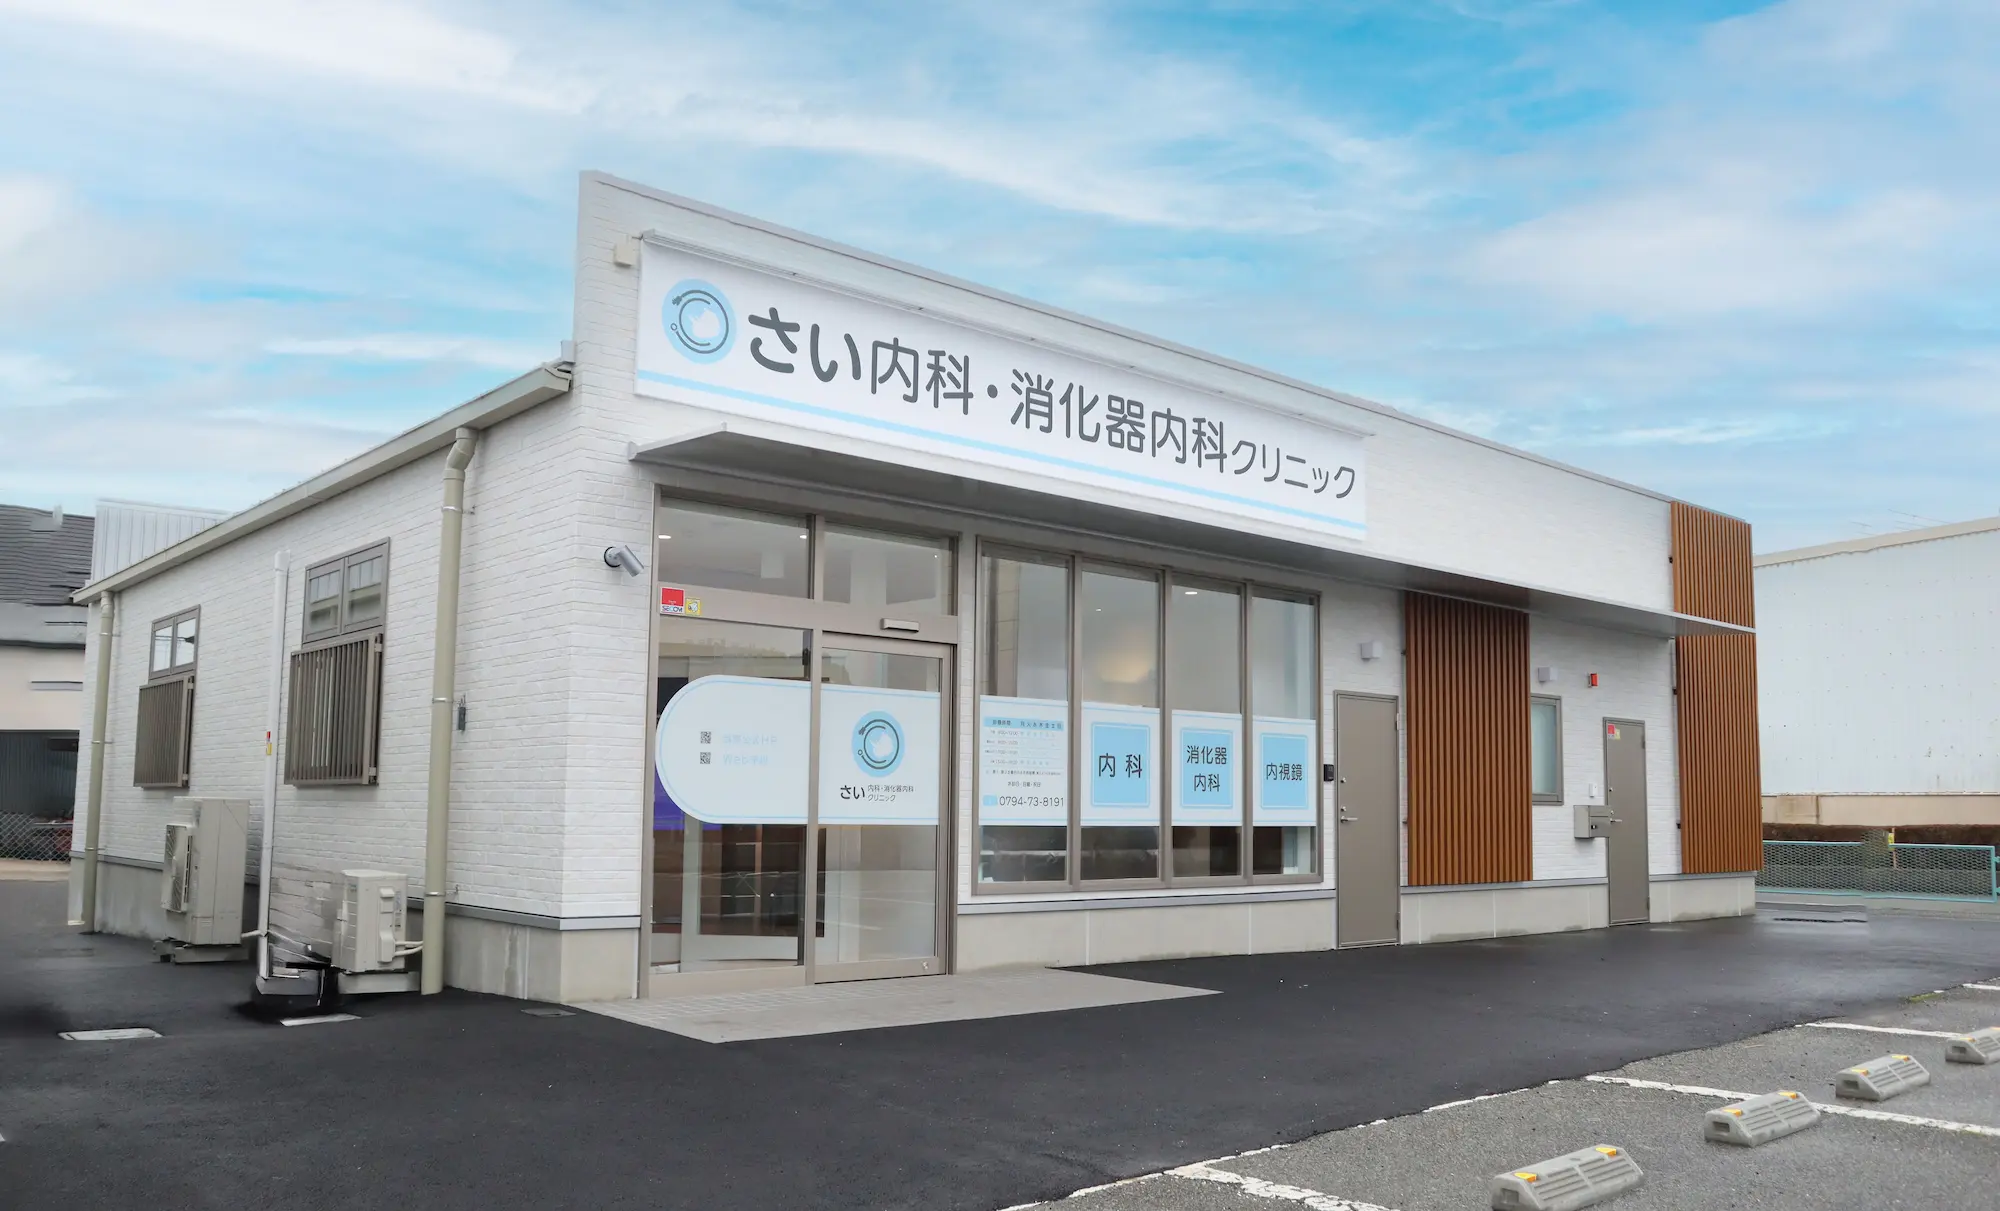 さい内科・消化器内科クリニックは兵庫県三木市にある内科・消化器内科クリニックです。胃カメラ・大腸カメラなど内視鏡専門医による苦痛の少ない検査を実施。高血圧や糖尿病、生活習慣病まで幅広く診察します。